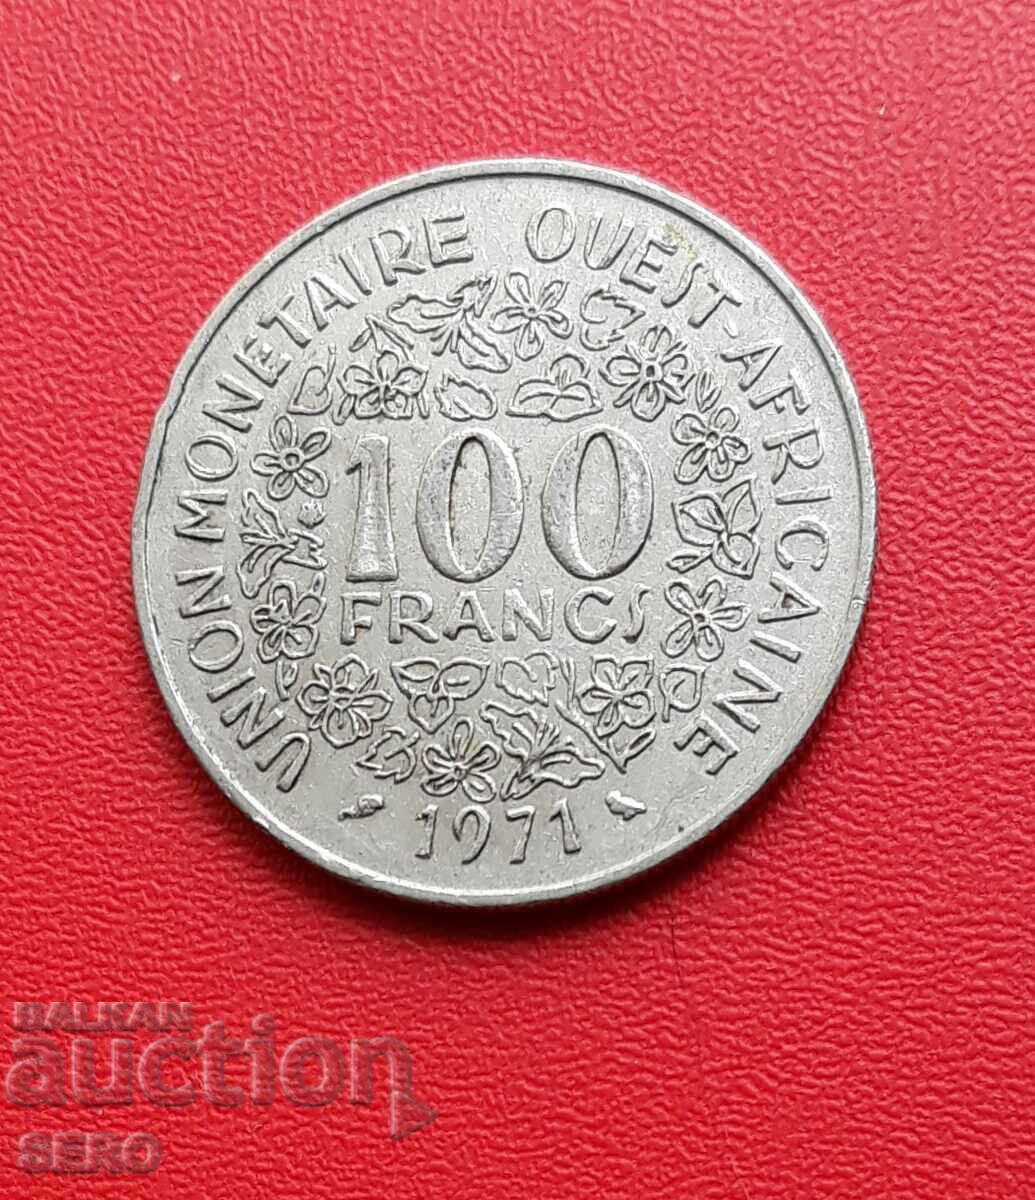 Γαλλική Δυτική Αφρική - 100 φράγκα 1971